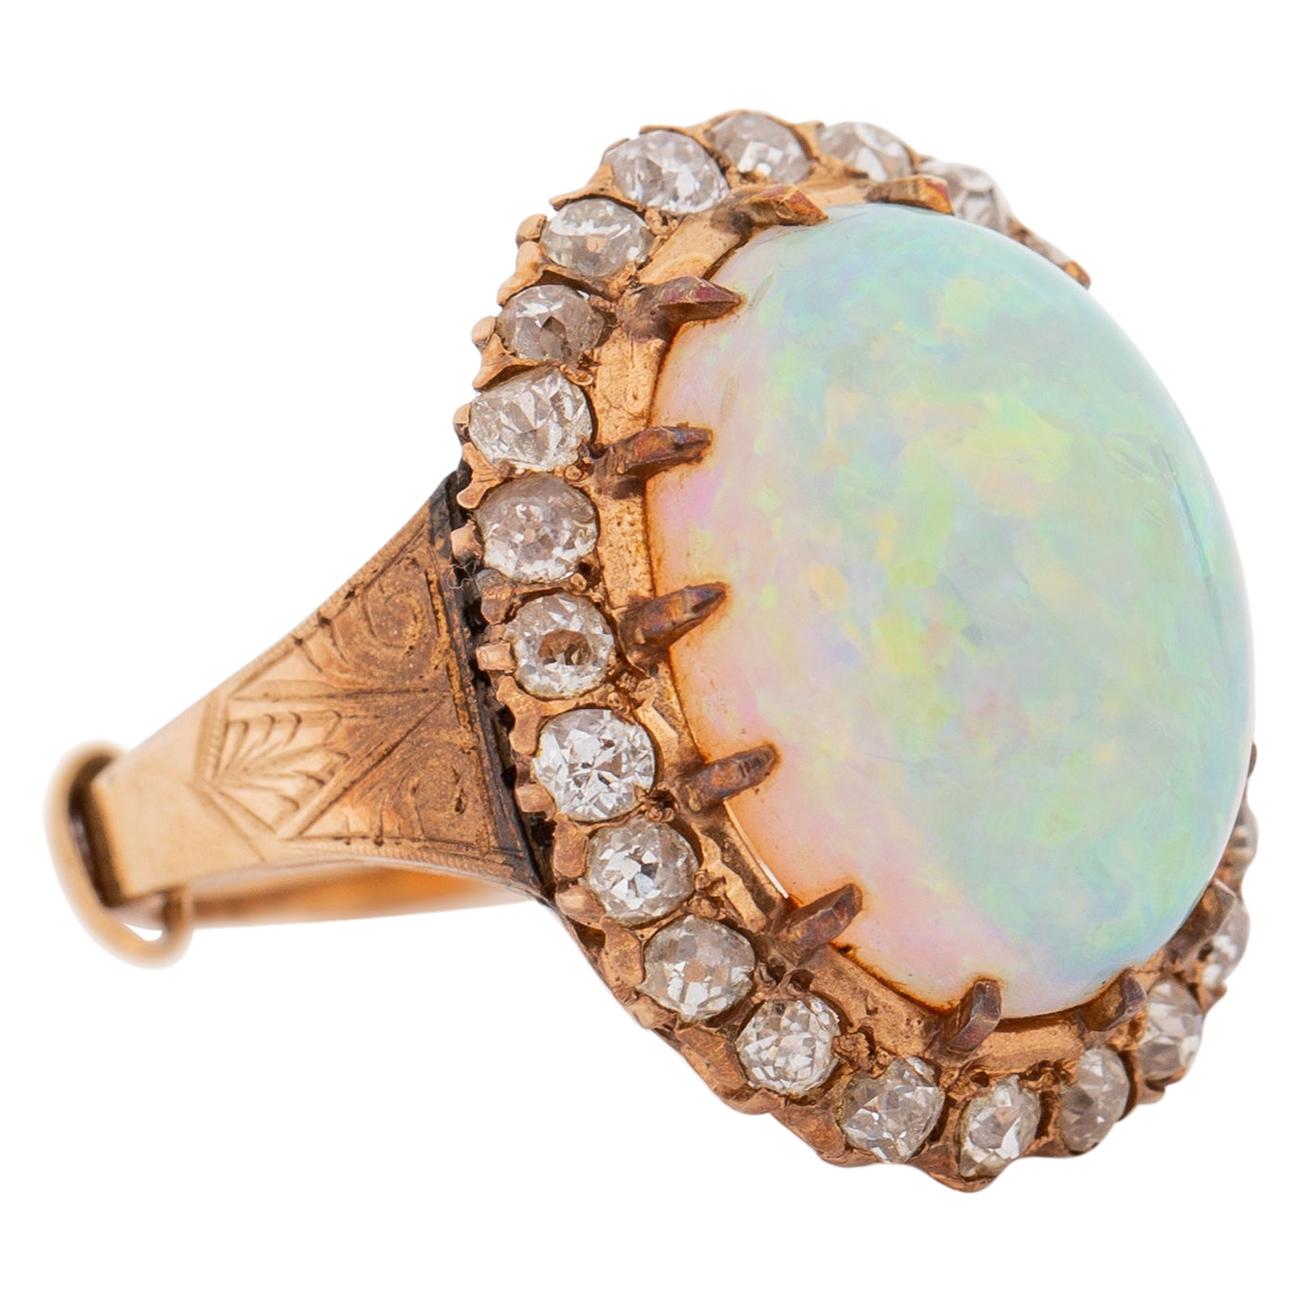 1920s 15 Carat Opal Ring with Diamonds, 14 Karat Gold